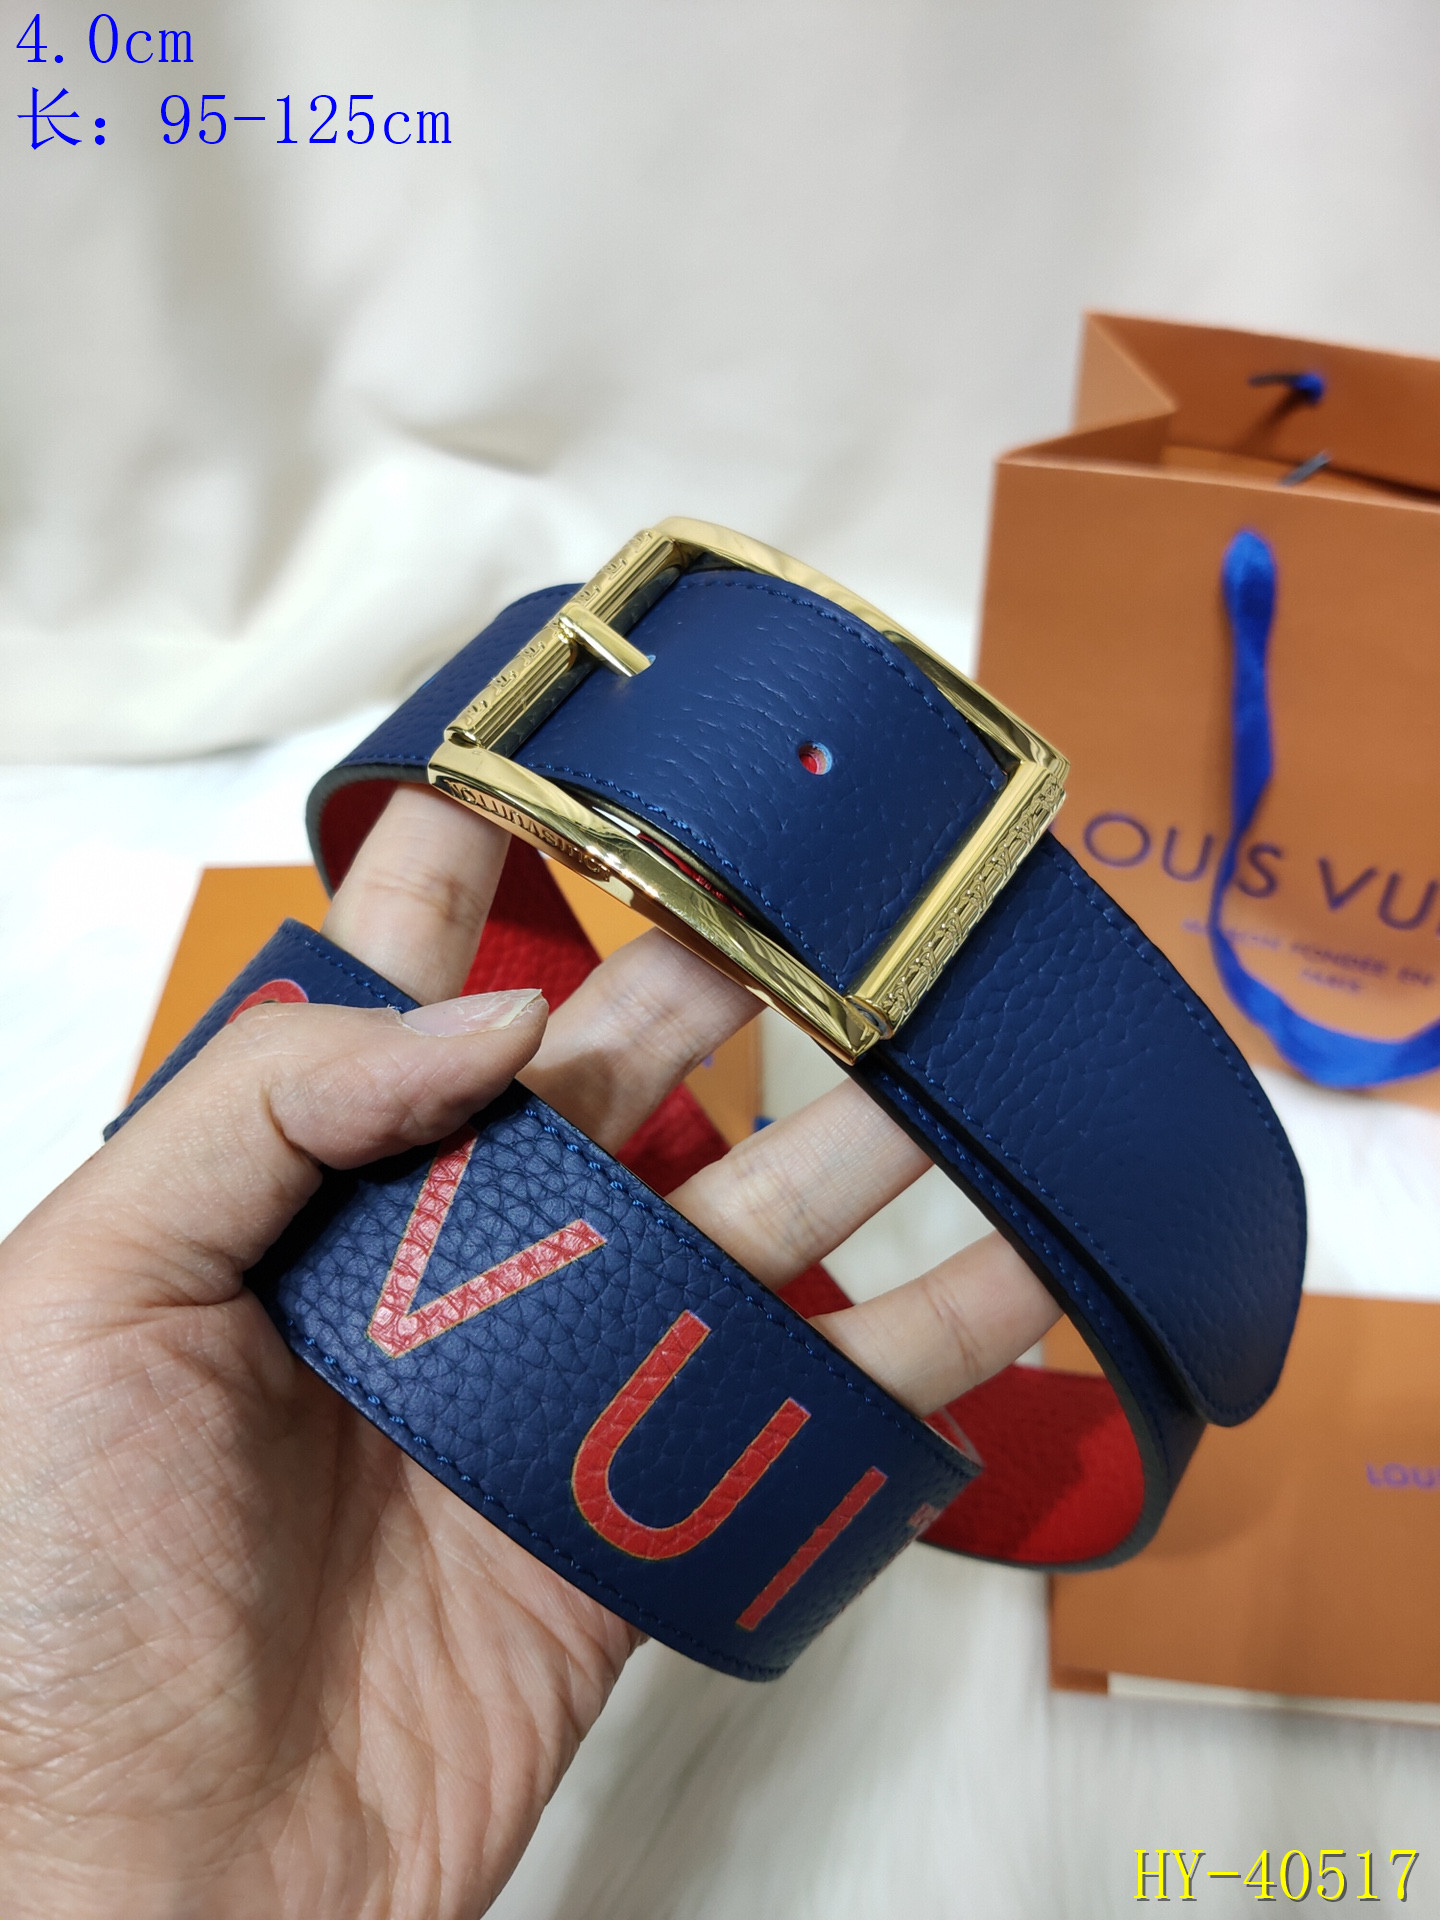 Cheap 2020 Cheap Louis Vuitton 4.0 cm Width Belts # 217919,$49 [FB217919] - Designer ...